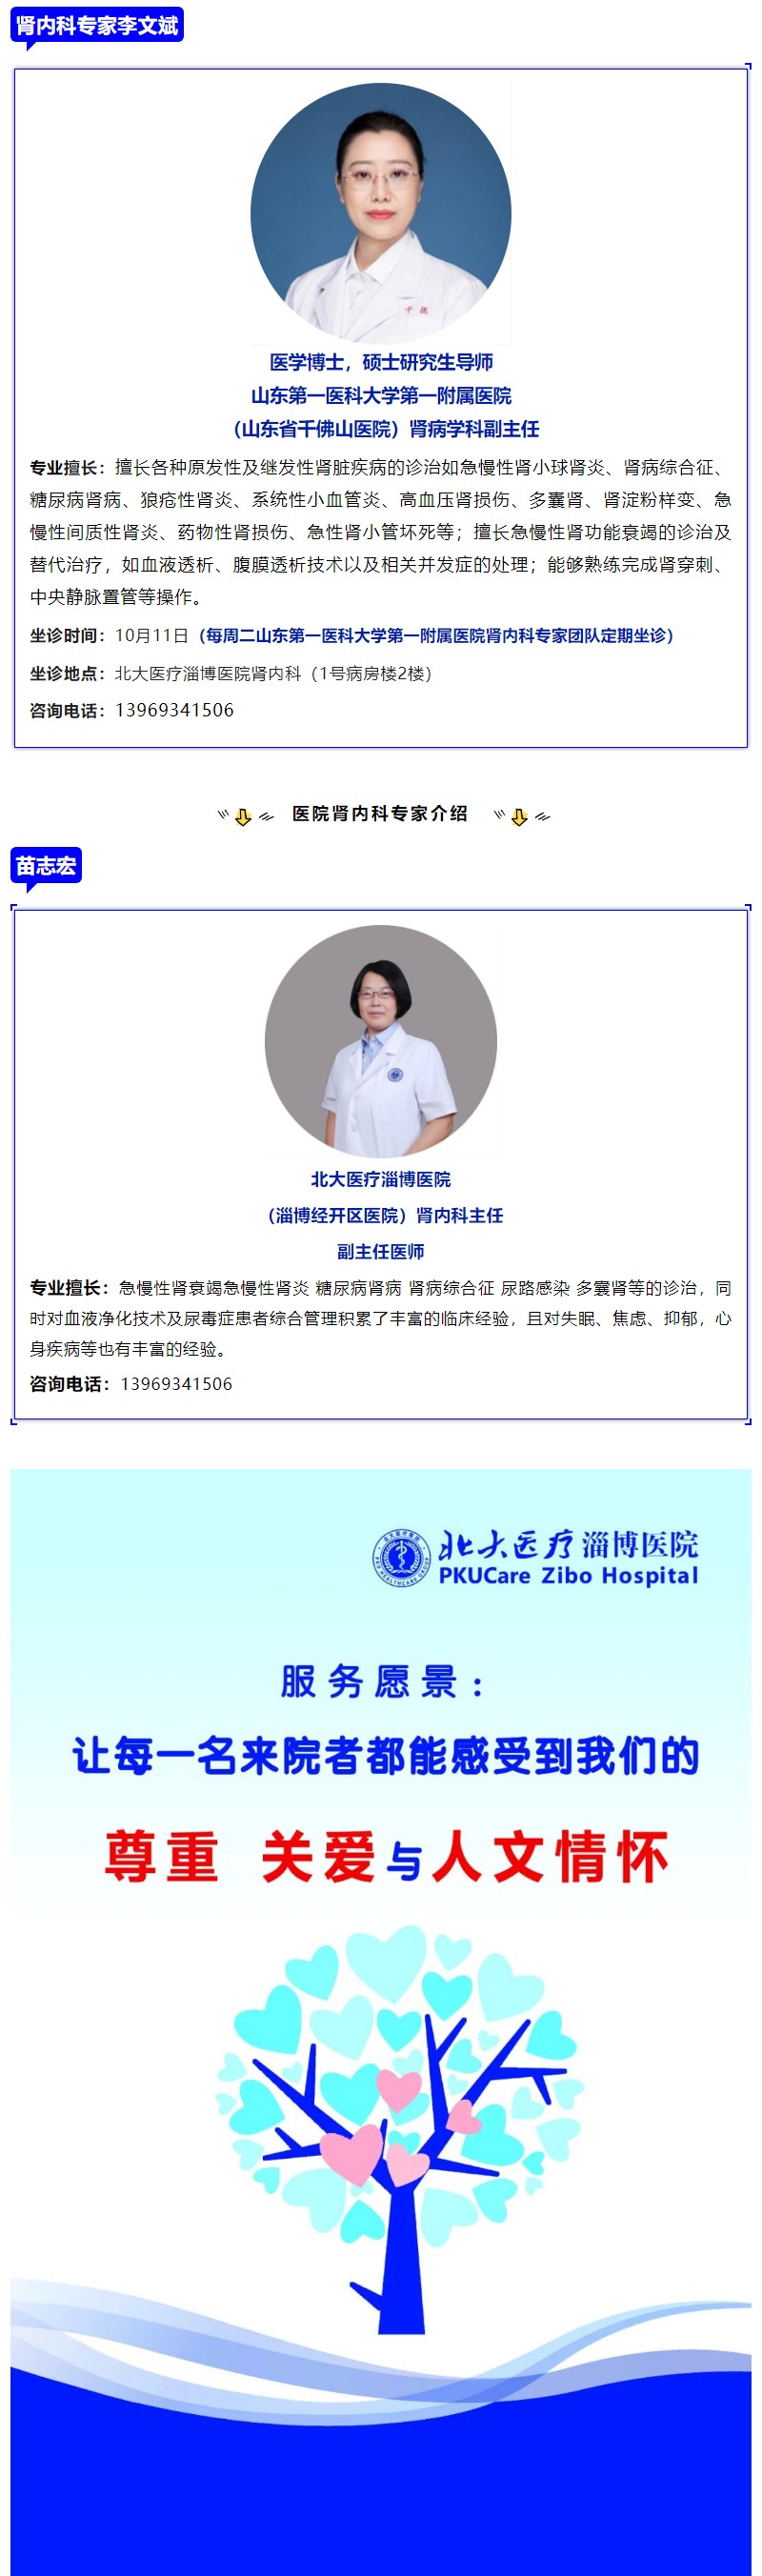 10月11日，山東省腎內專家李文斌教授到北大醫療淄博醫院坐診.jpg